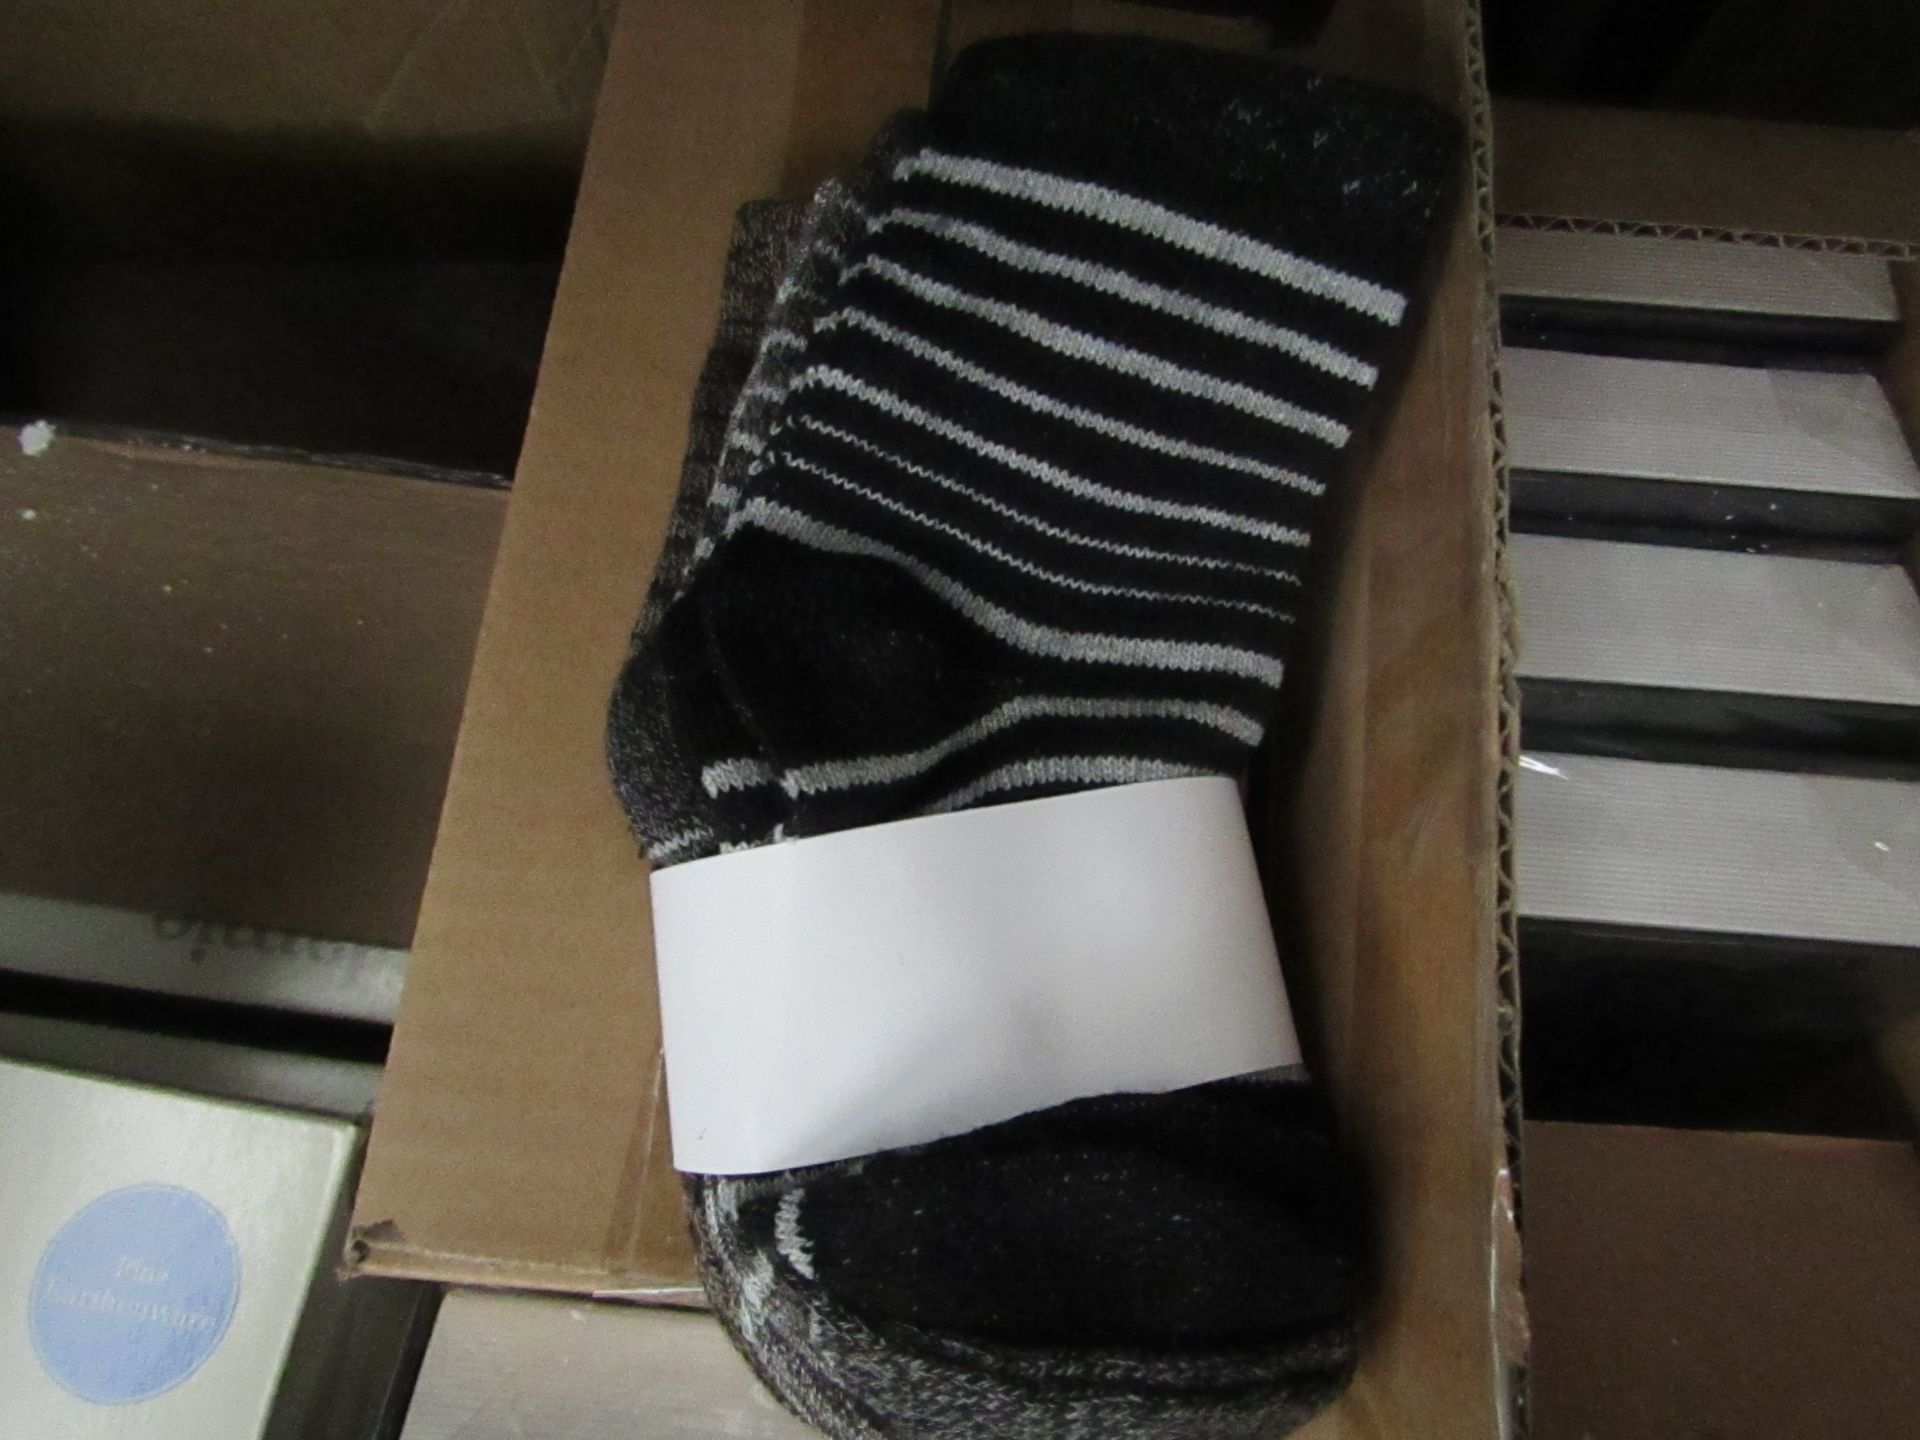 5 packs of 5 pairs of Baby Socks. New